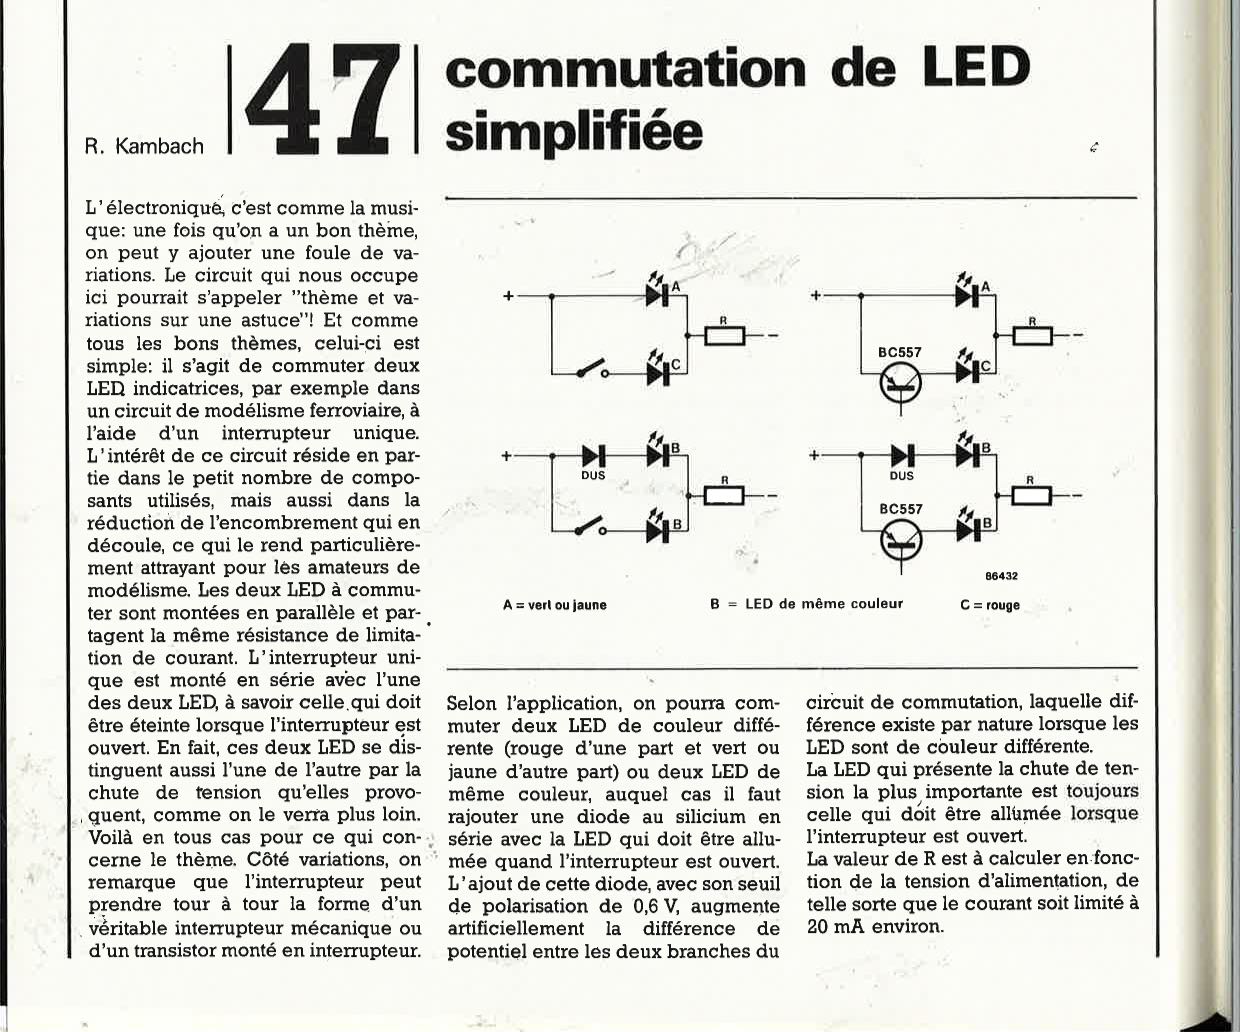 Commutation de LED simplifiée